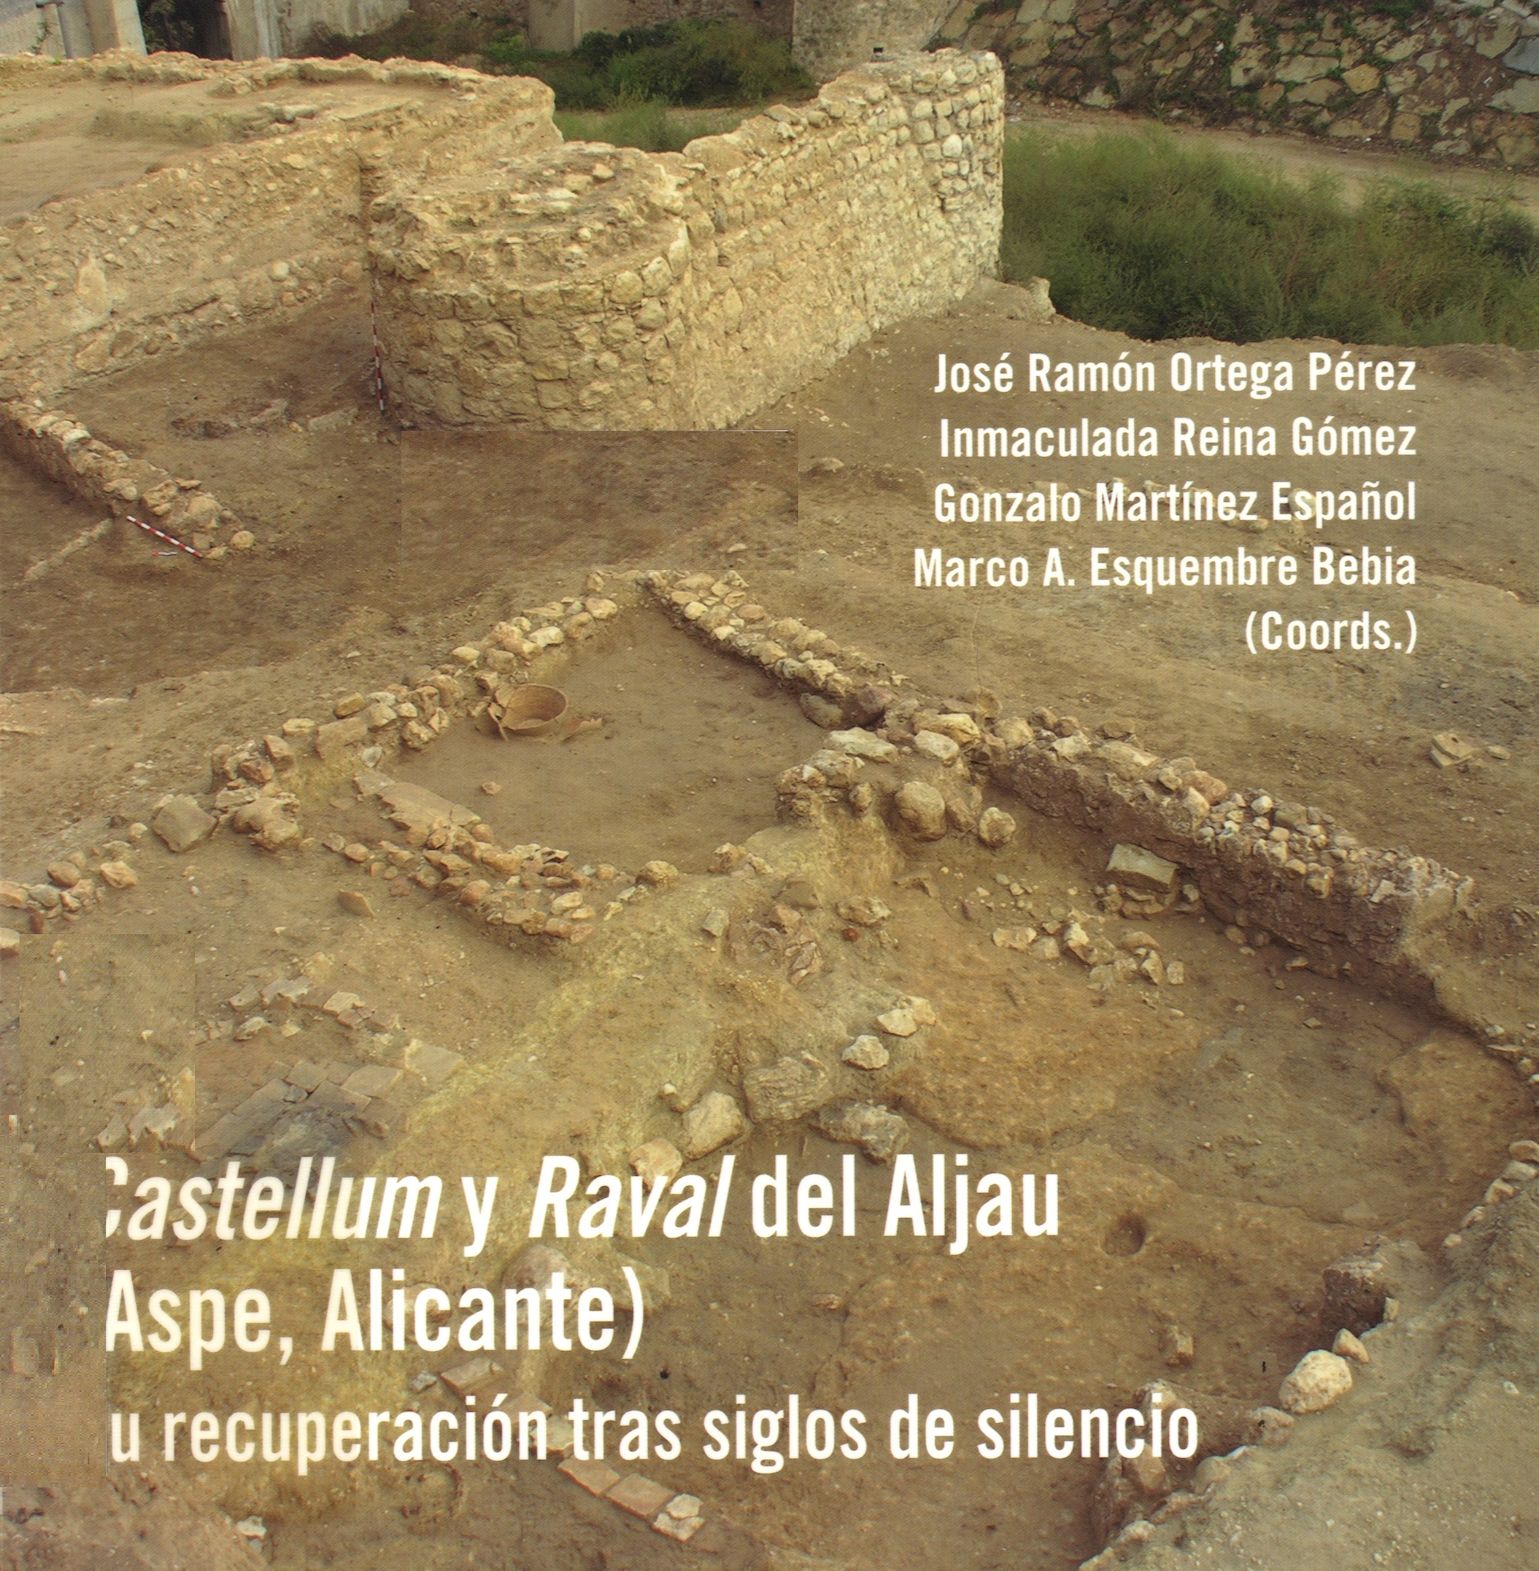 Imagen de portada del libro "Castellum y Raval" del Aljau (Aspe, Alicante)